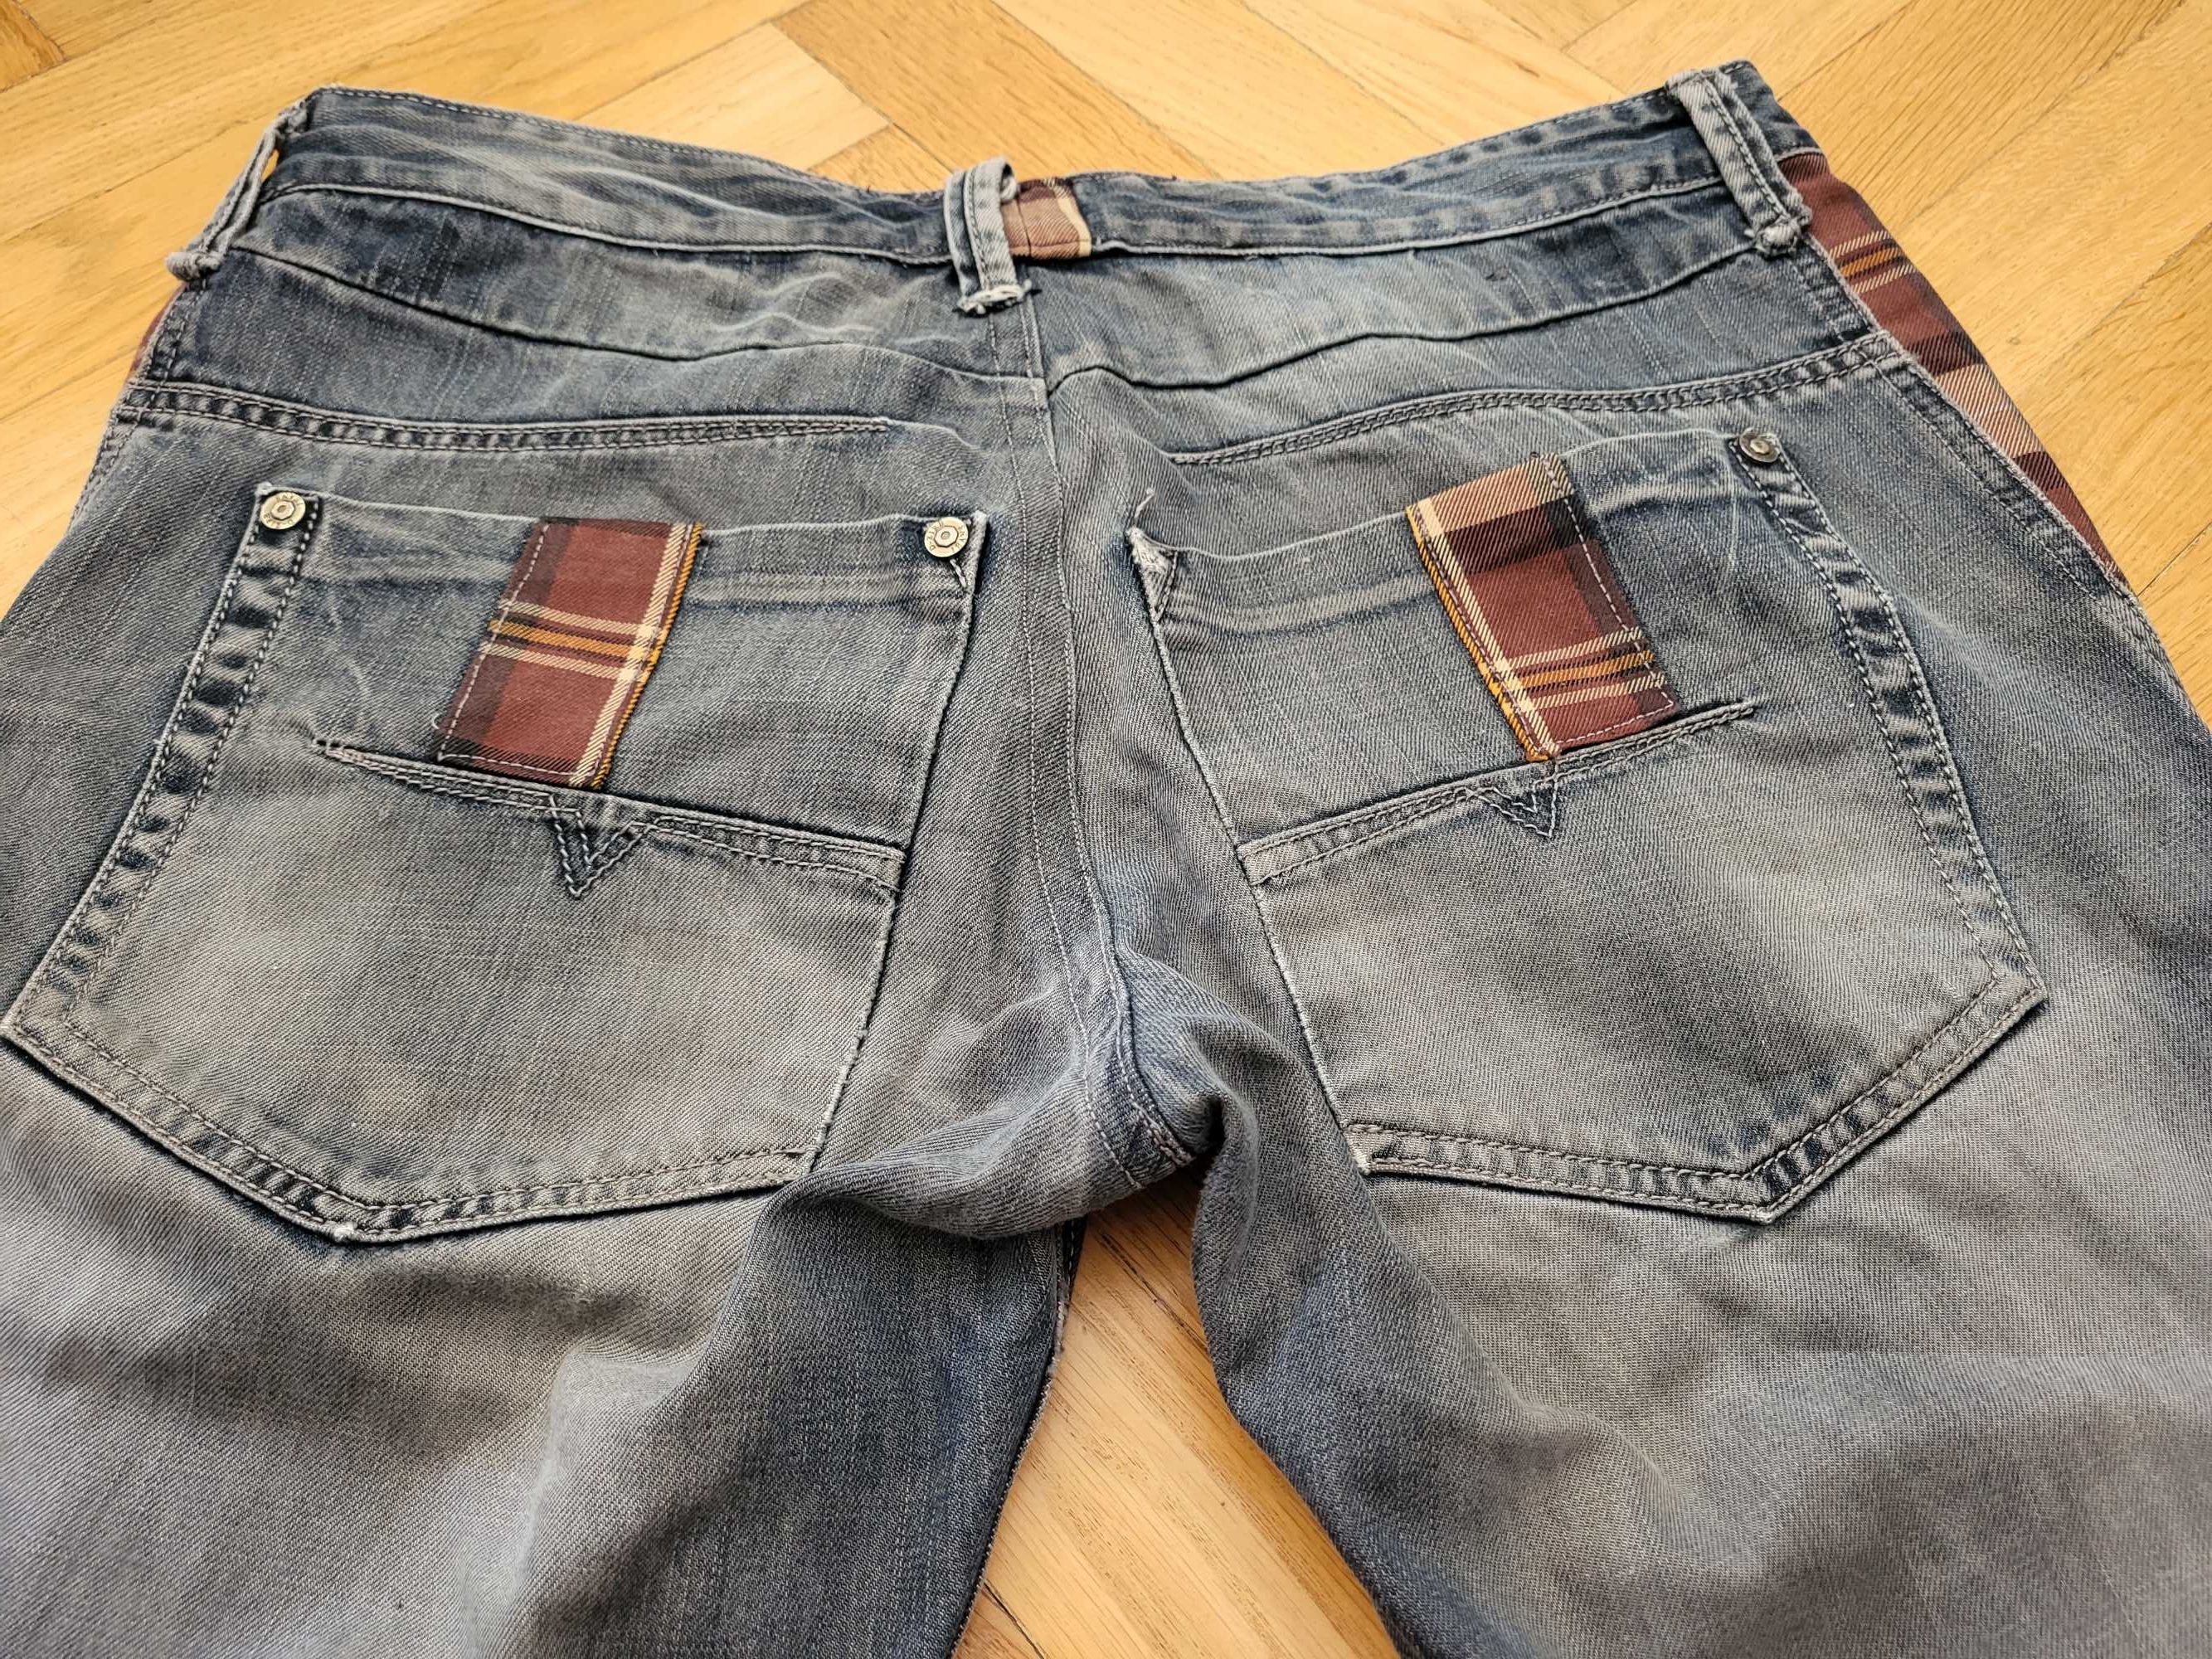 spodnie jeansy męskie (pas 88-90 cm) używane